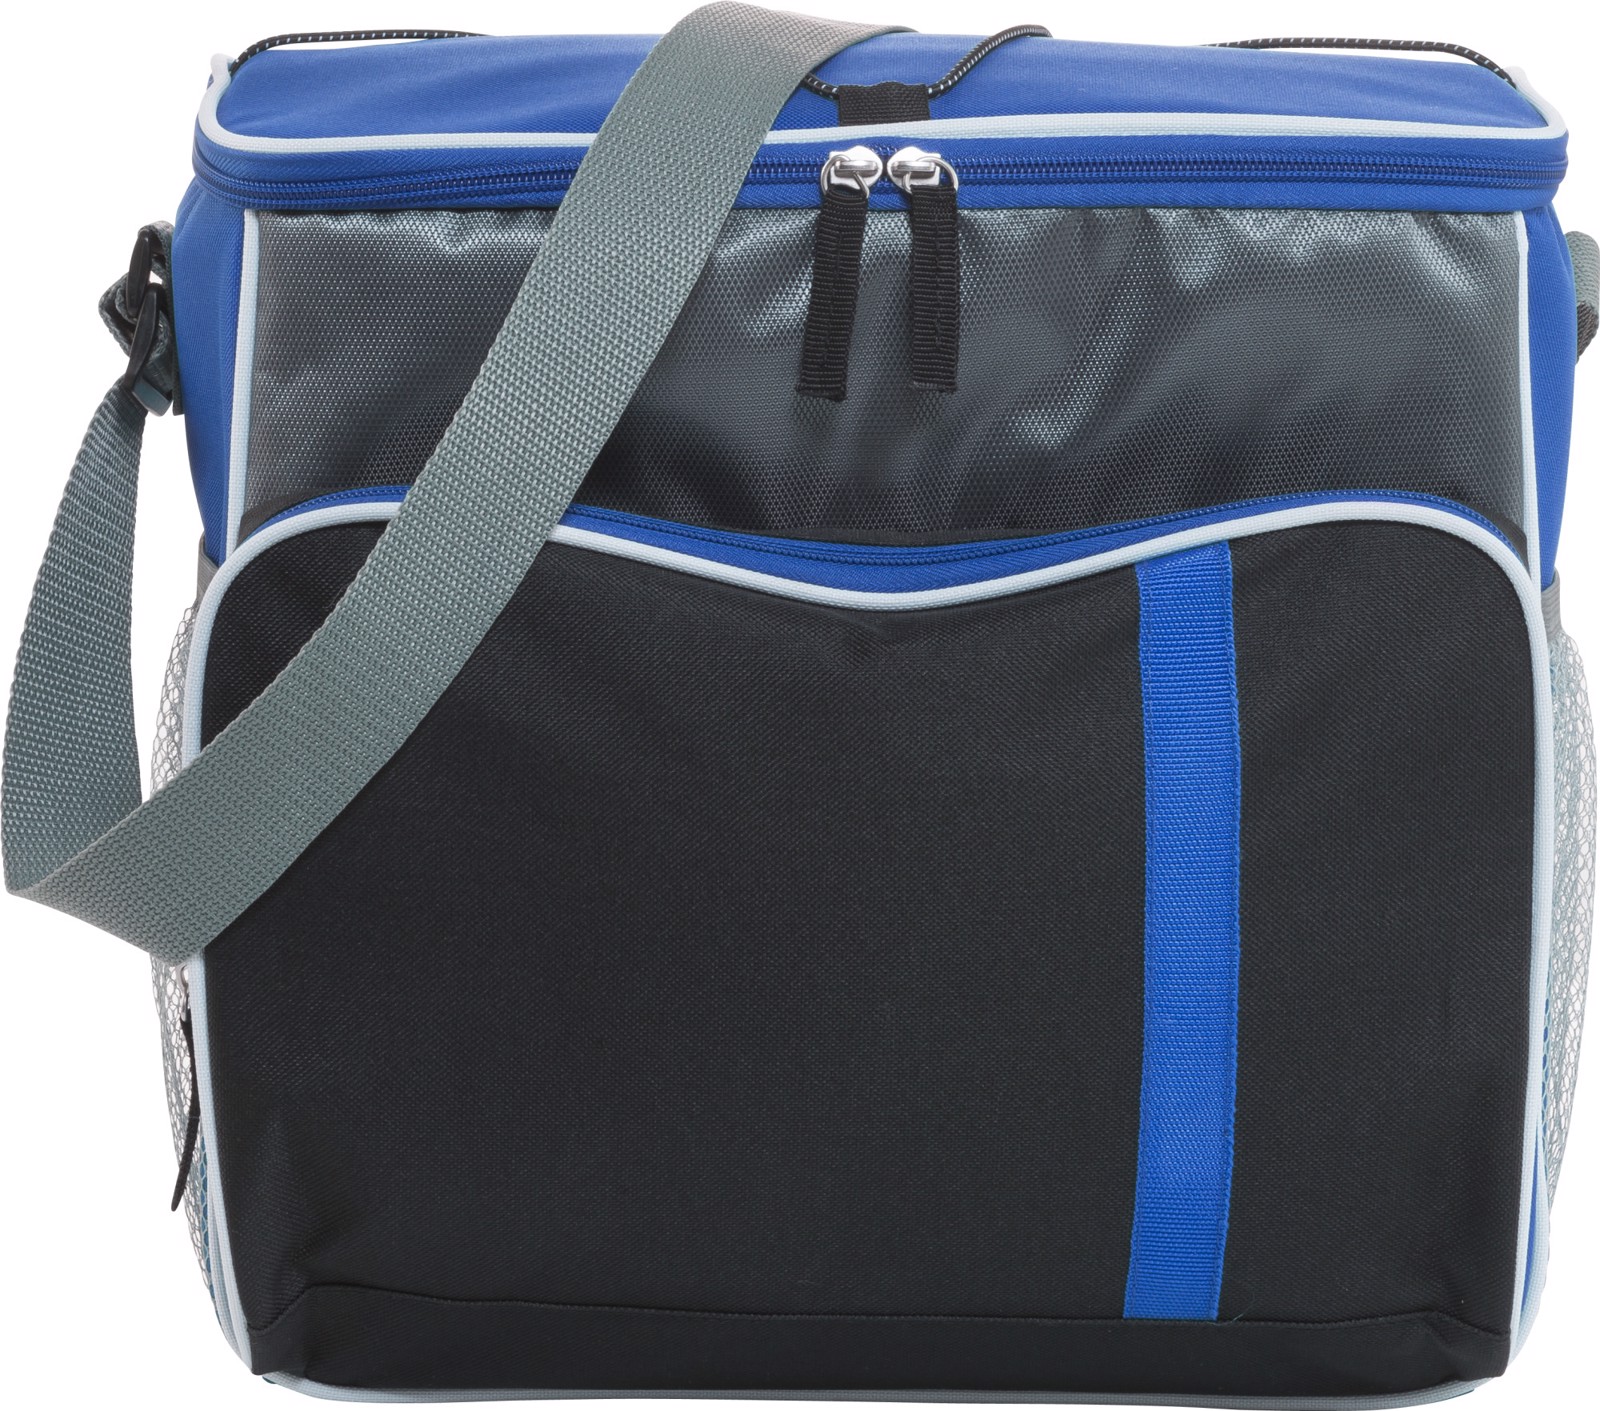 Polyester (600D) cooler bag - Cobalt Blue